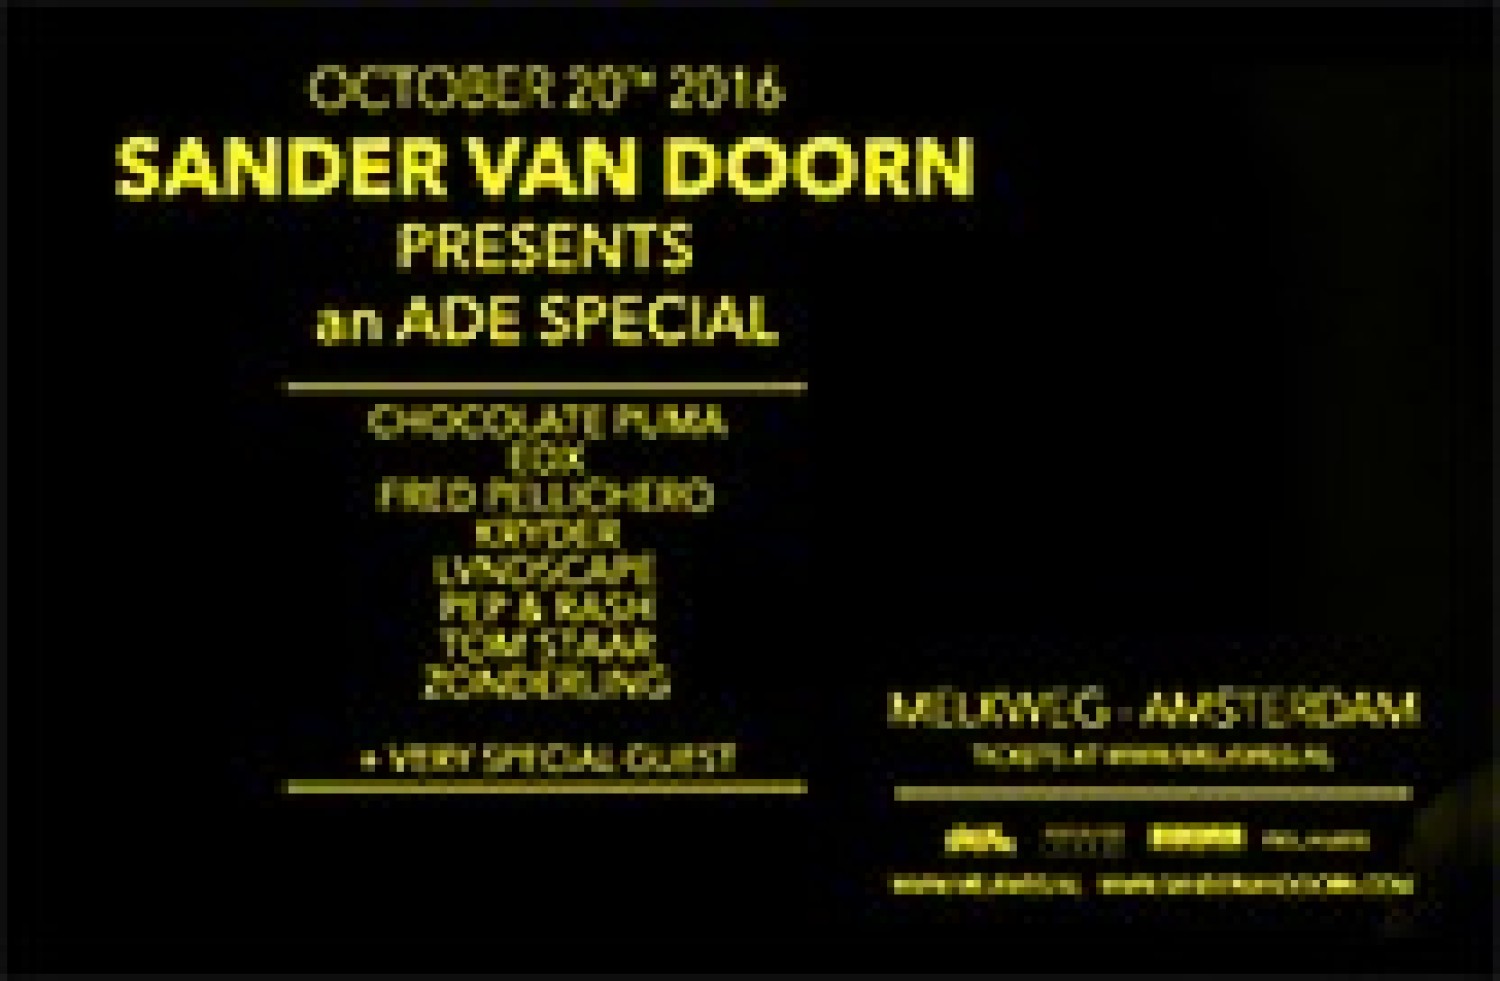 Party report: Sander van Doorn Presents An ADE Special, Amsterdam (20-10-2016)